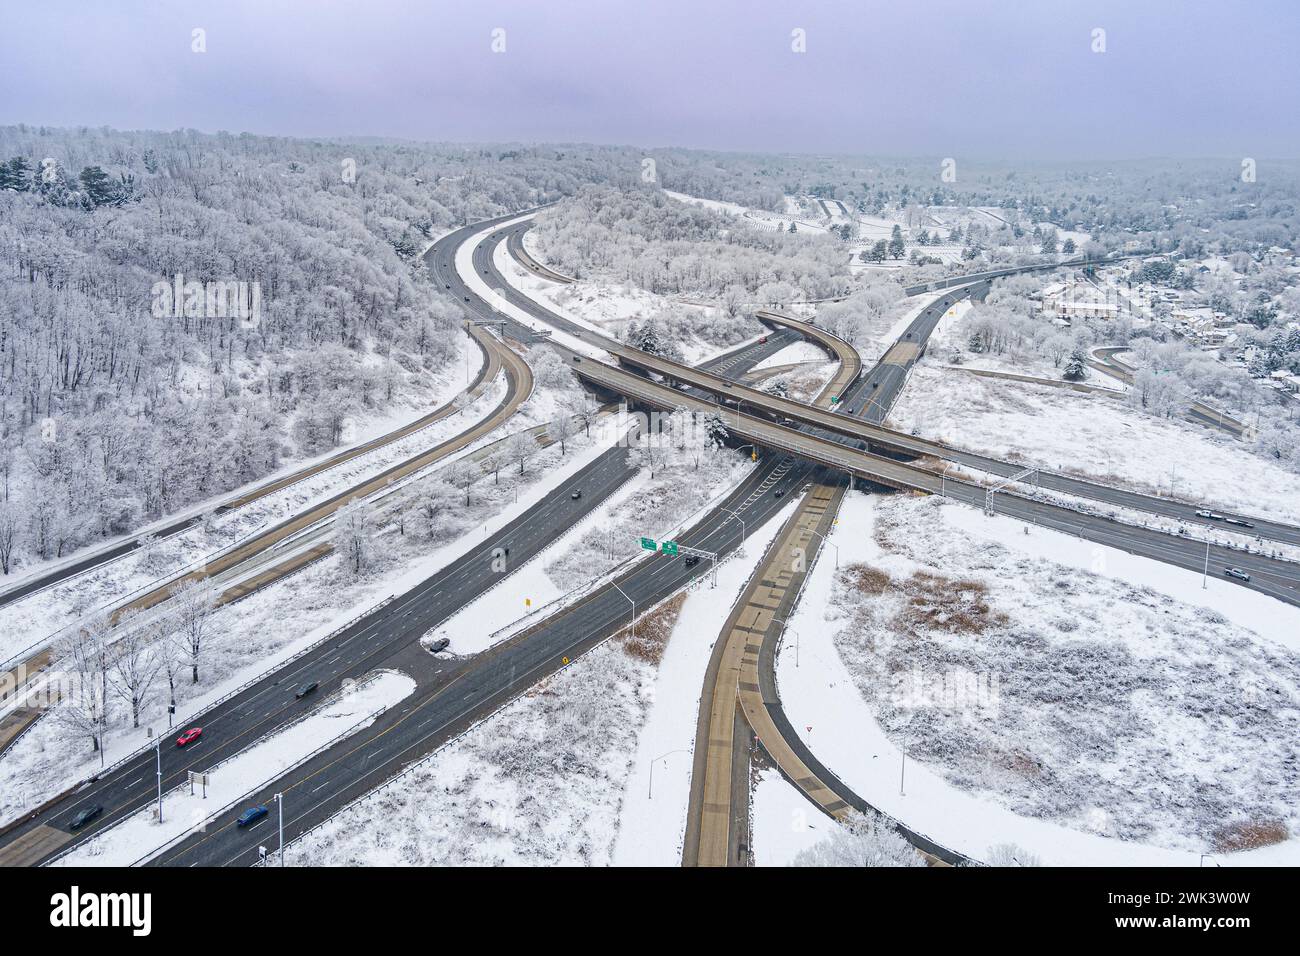 Vue aérienne de l'échangeur routier en hiver avec de la neige, Pennsylvanie, États-Unis Banque D'Images